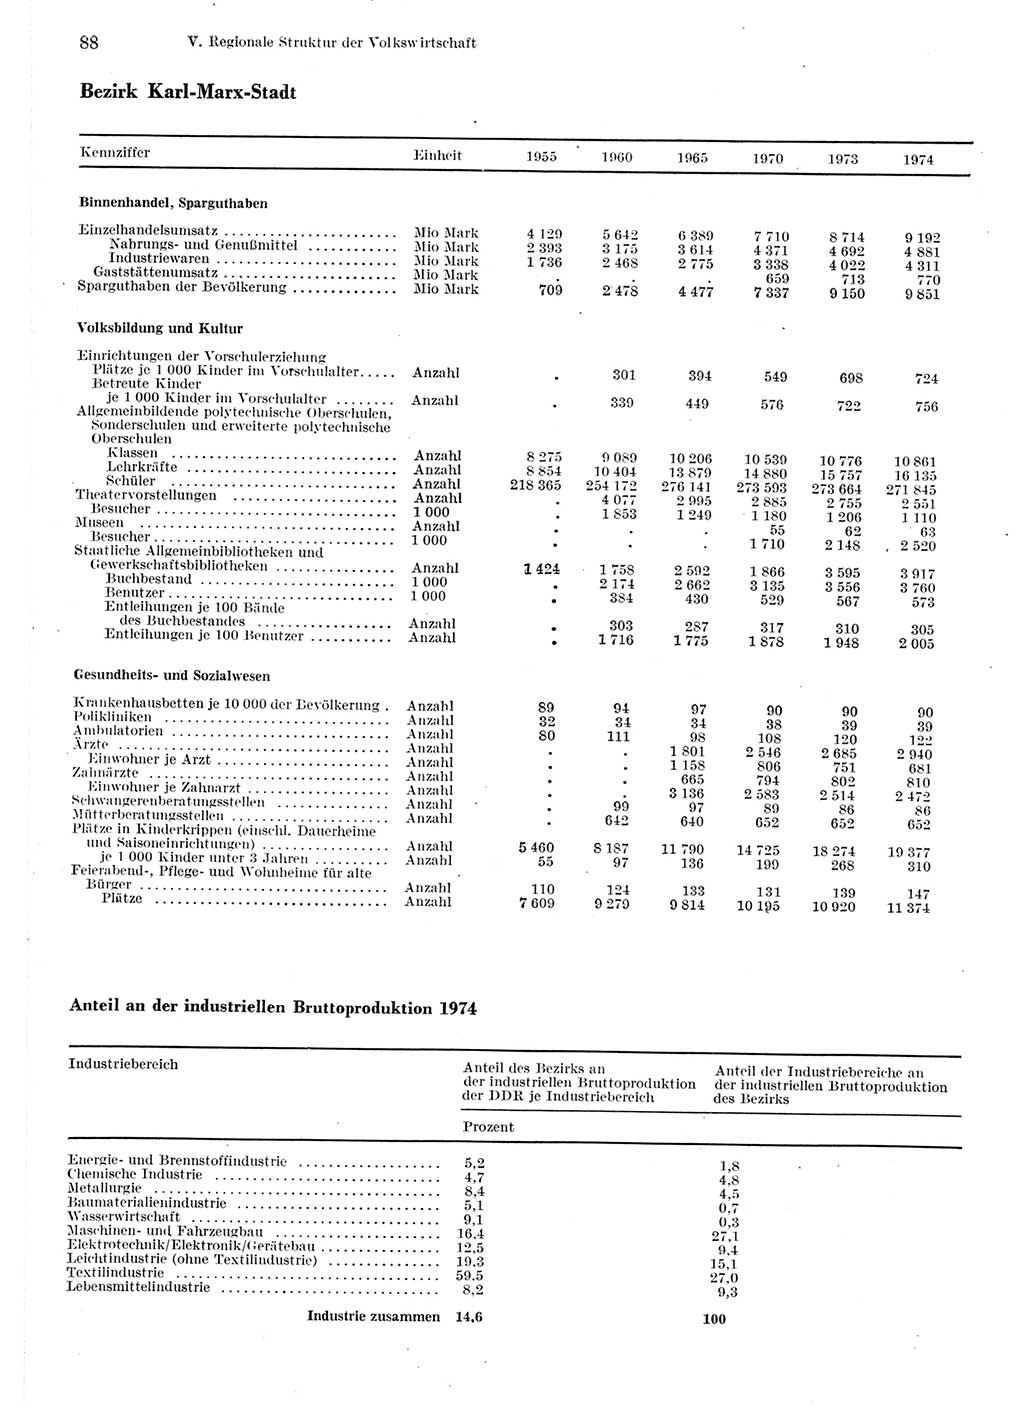 Statistisches Jahrbuch der Deutschen Demokratischen Republik (DDR) 1975, Seite 88 (Stat. Jb. DDR 1975, S. 88)